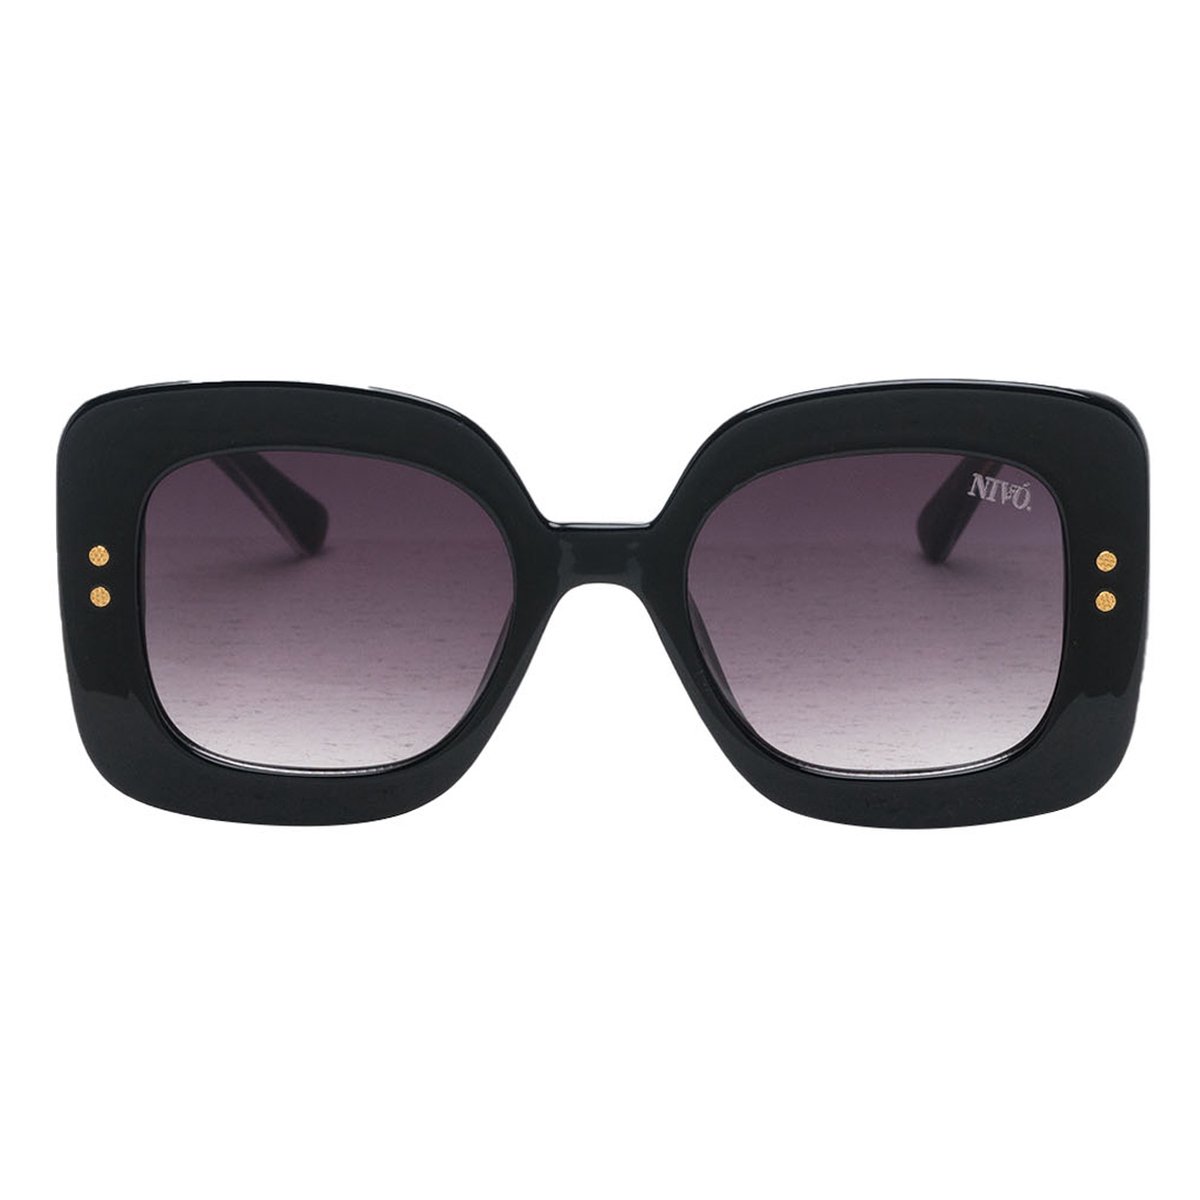 Nivó Zonnebril - Diana Zwart/Grijs – Zonnebril Dames - Zwarte Dames Zonnebril - Stijlvol - UV400 Filter – Gepolariseerd - Gratis luxe Brillenhoes